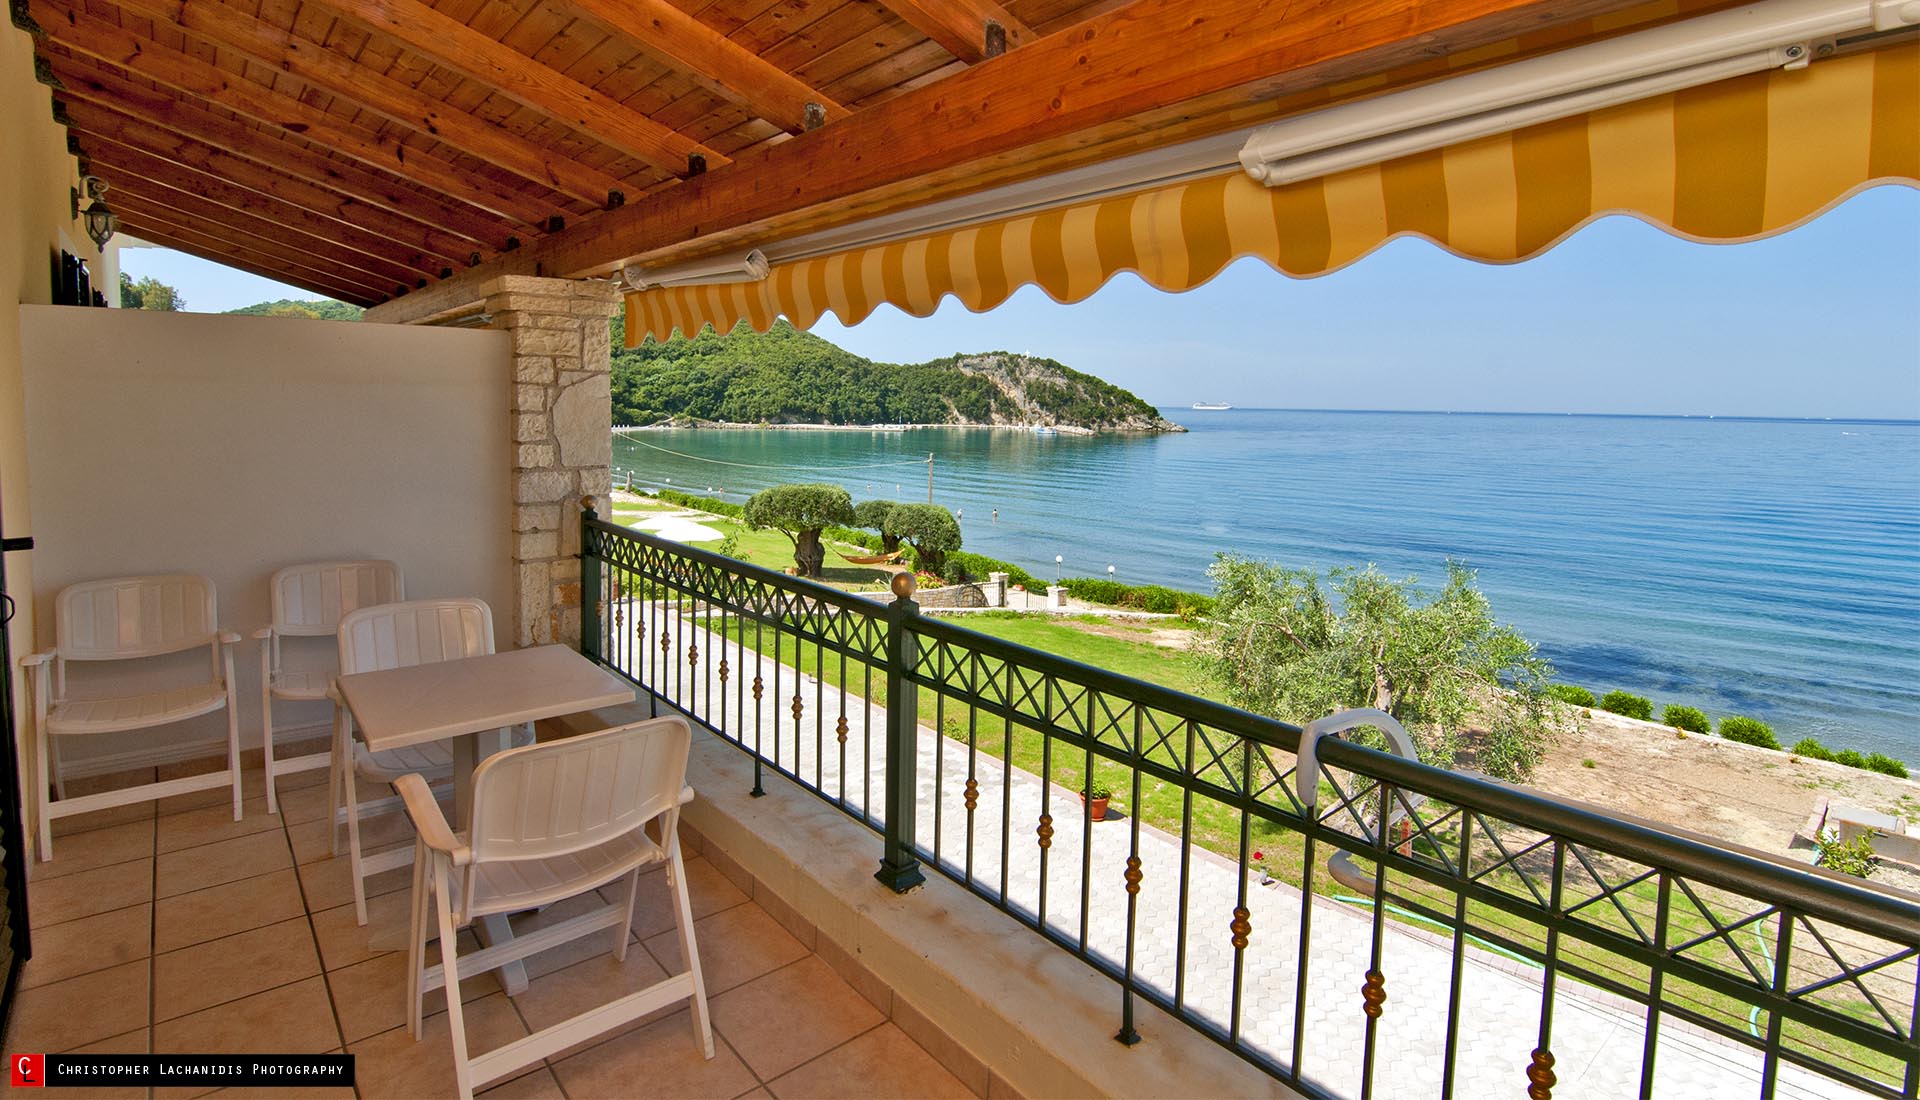 Family Ntemos Rooms to let Arrila Beach Perdika Thesprotia Epirus Greece!